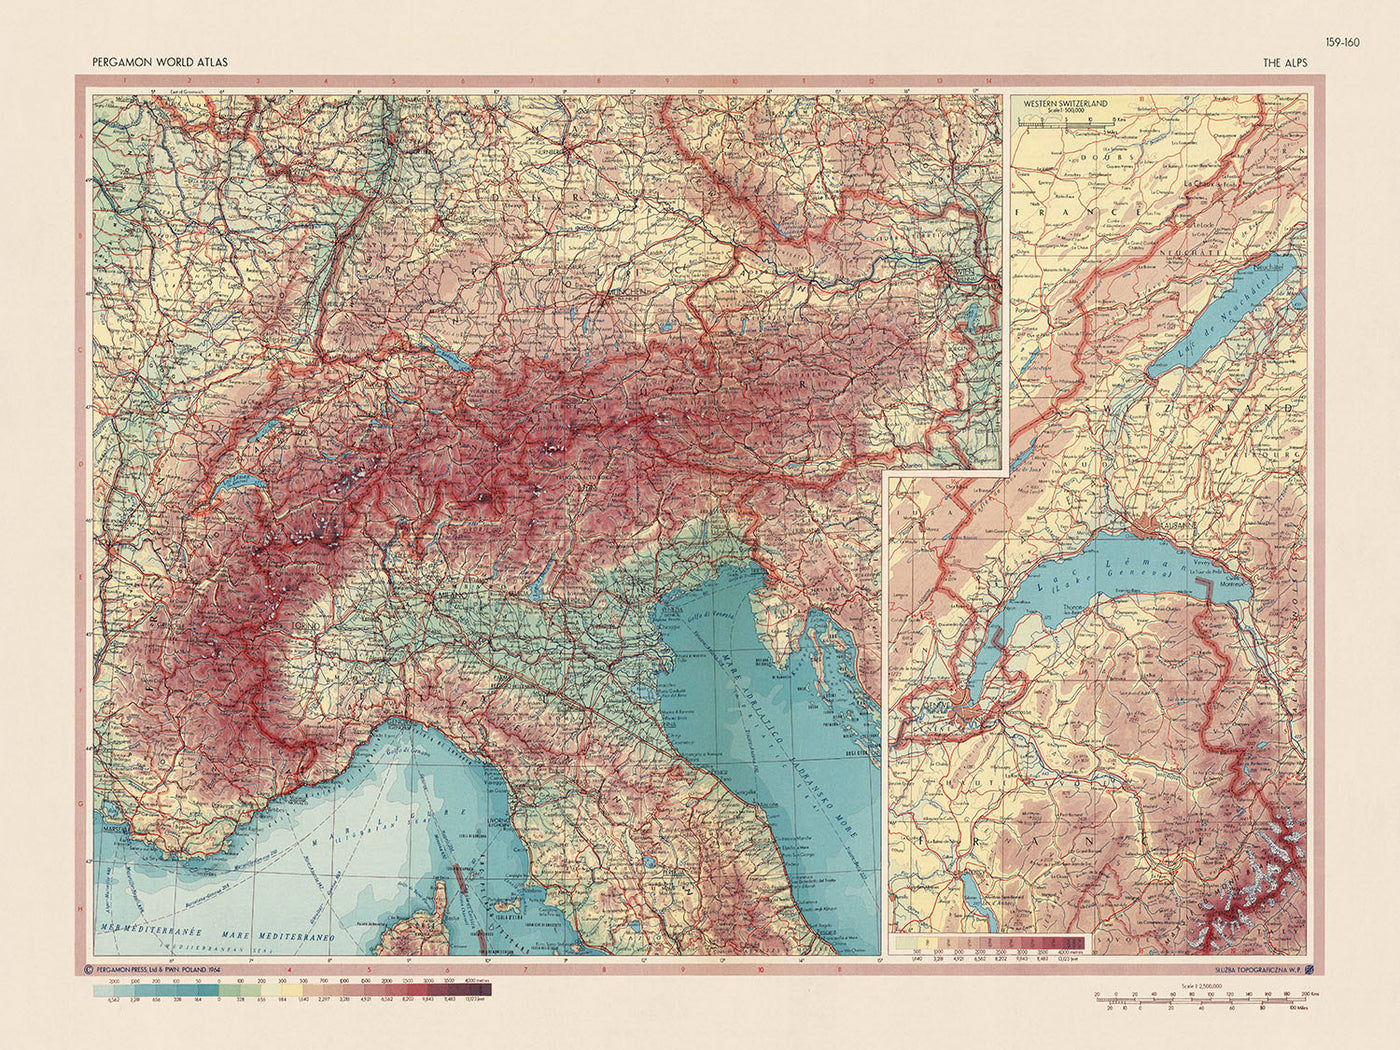 Mapa antiguo de los Alpes del Servicio de Topografía del Ejército Polaco, 1967: Suiza occidental, límites políticos detallados, características físicas, picos alpinos, valles.